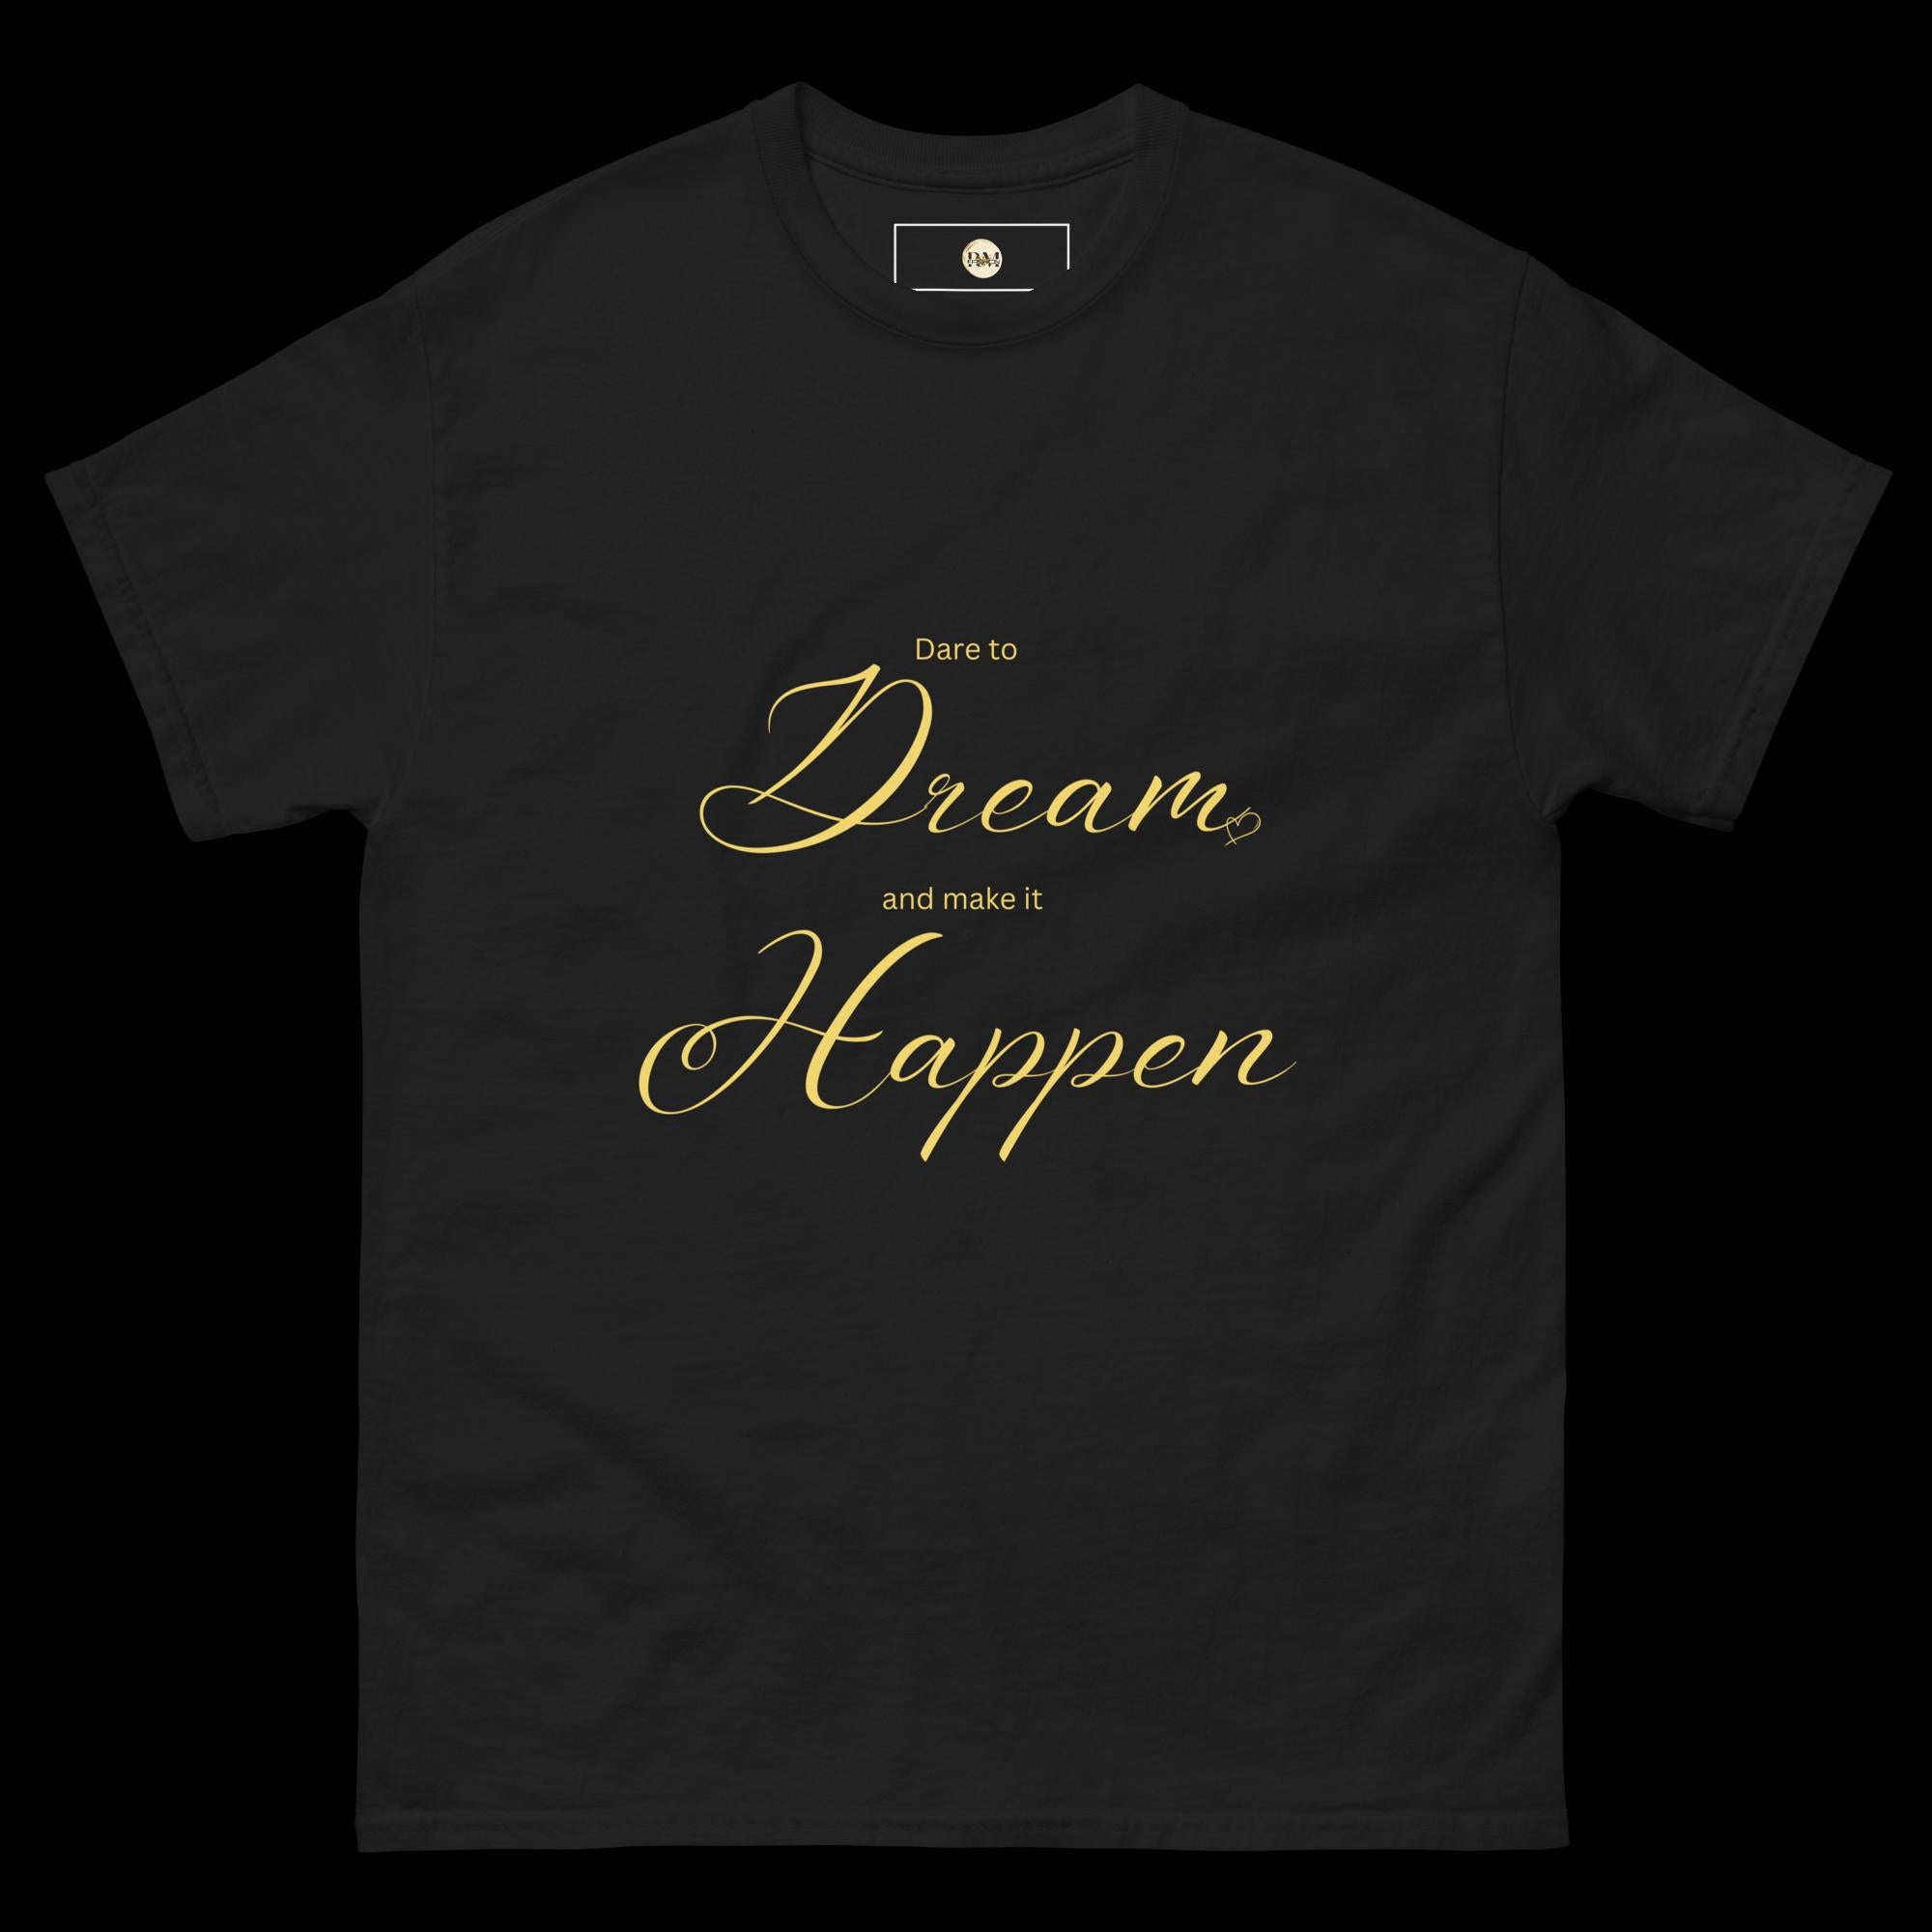 Dare to Dream and Make It Happen" Men's classic tee